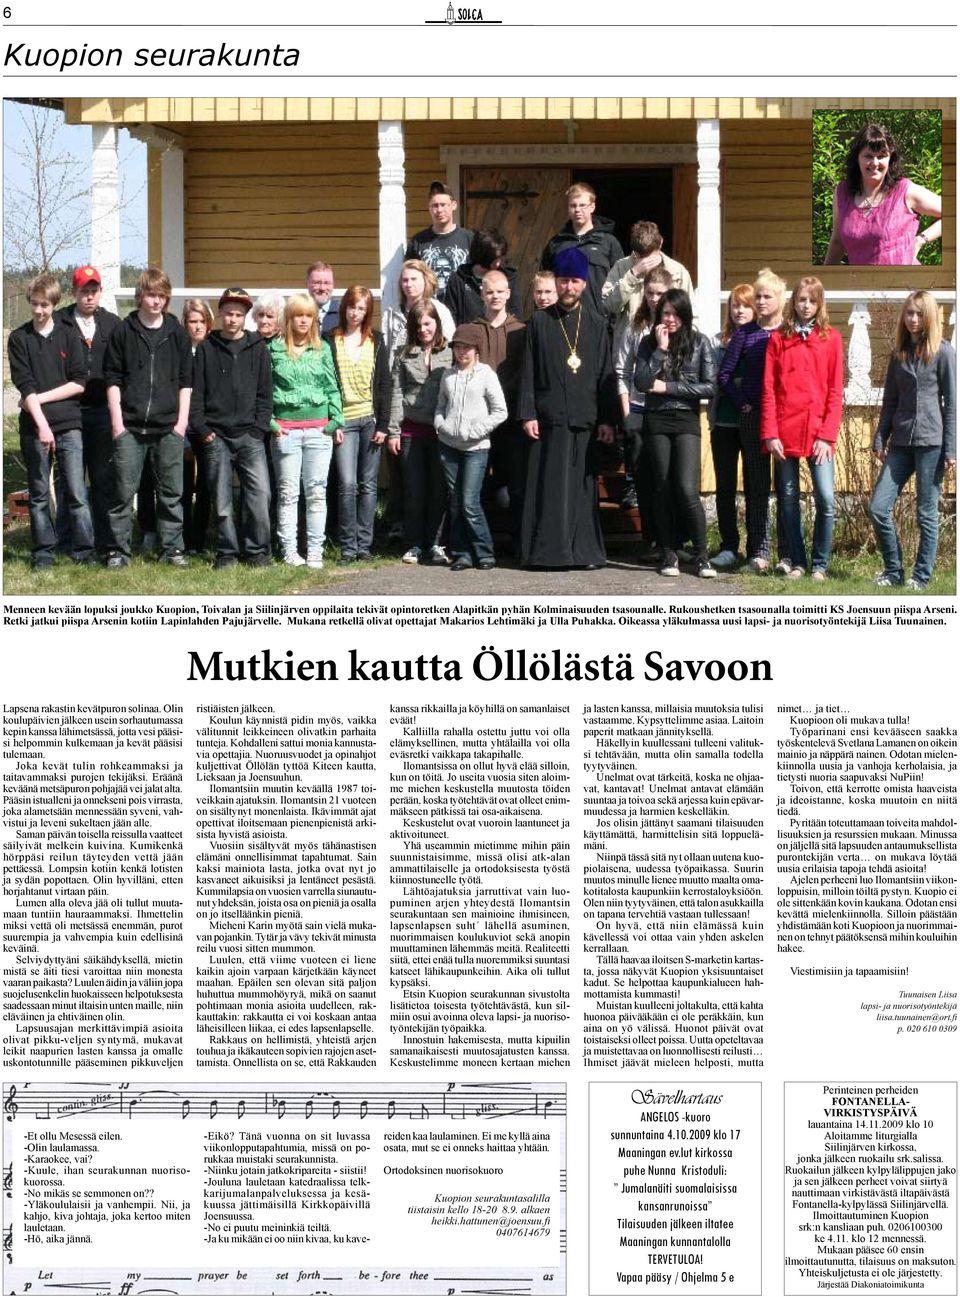 Oikeassa yläkulmassa uusi lapsi- ja nuorisotyöntekijä Liisa Tuunainen. Mutkien kautta Öllölästä Savoon Lapsena rakastin kevätpuron solinaa.